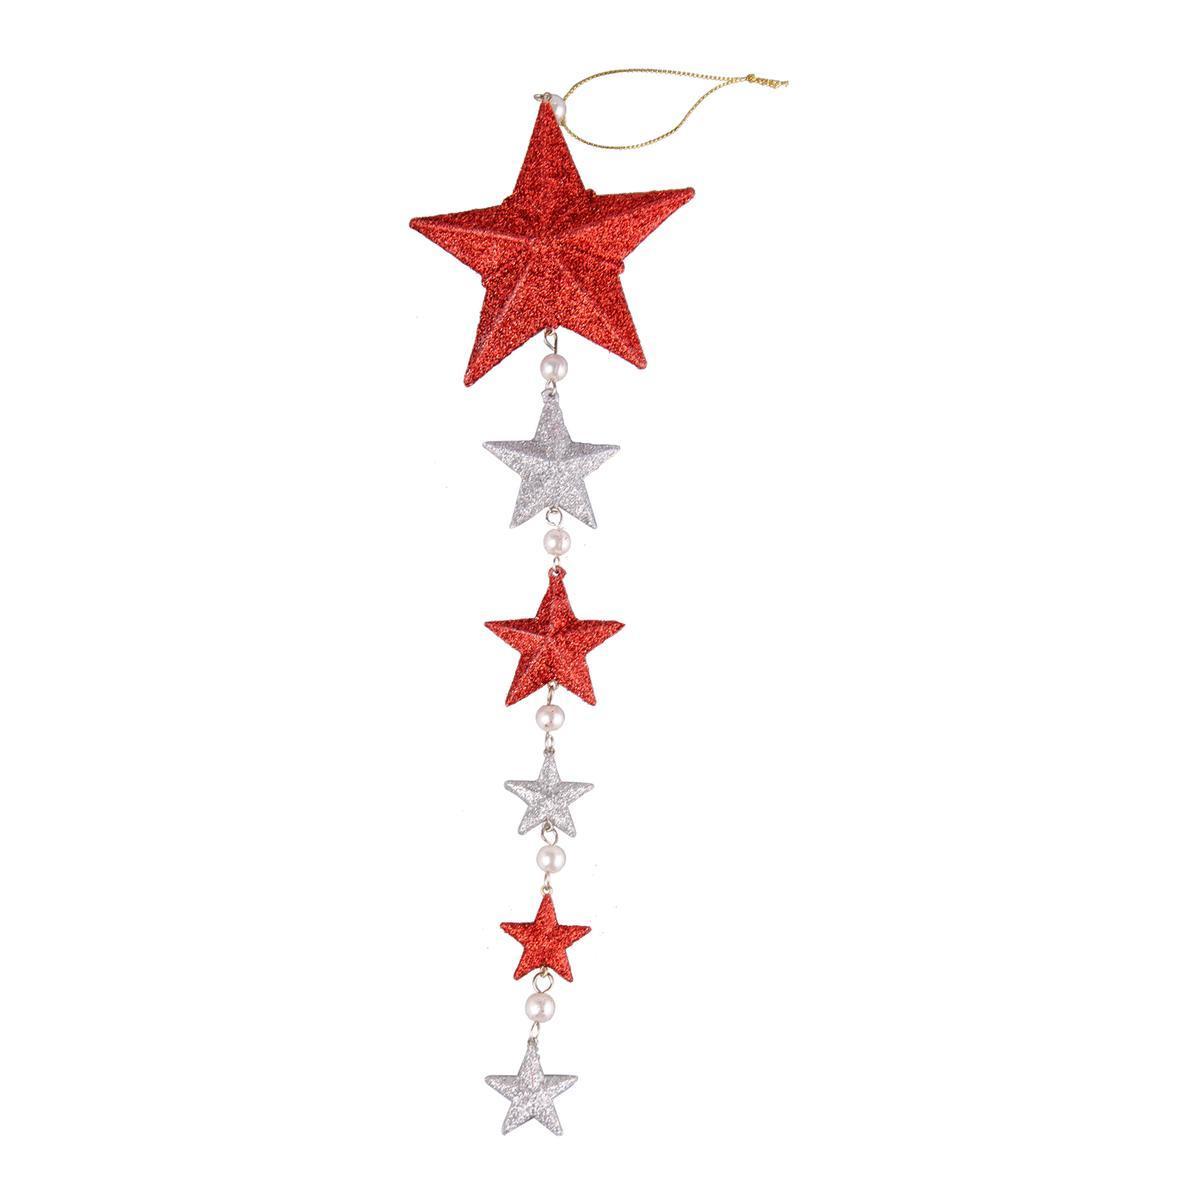 Suspension étoile - Plastique - 10 x 3 x H 38 cm - Rouge et blanc